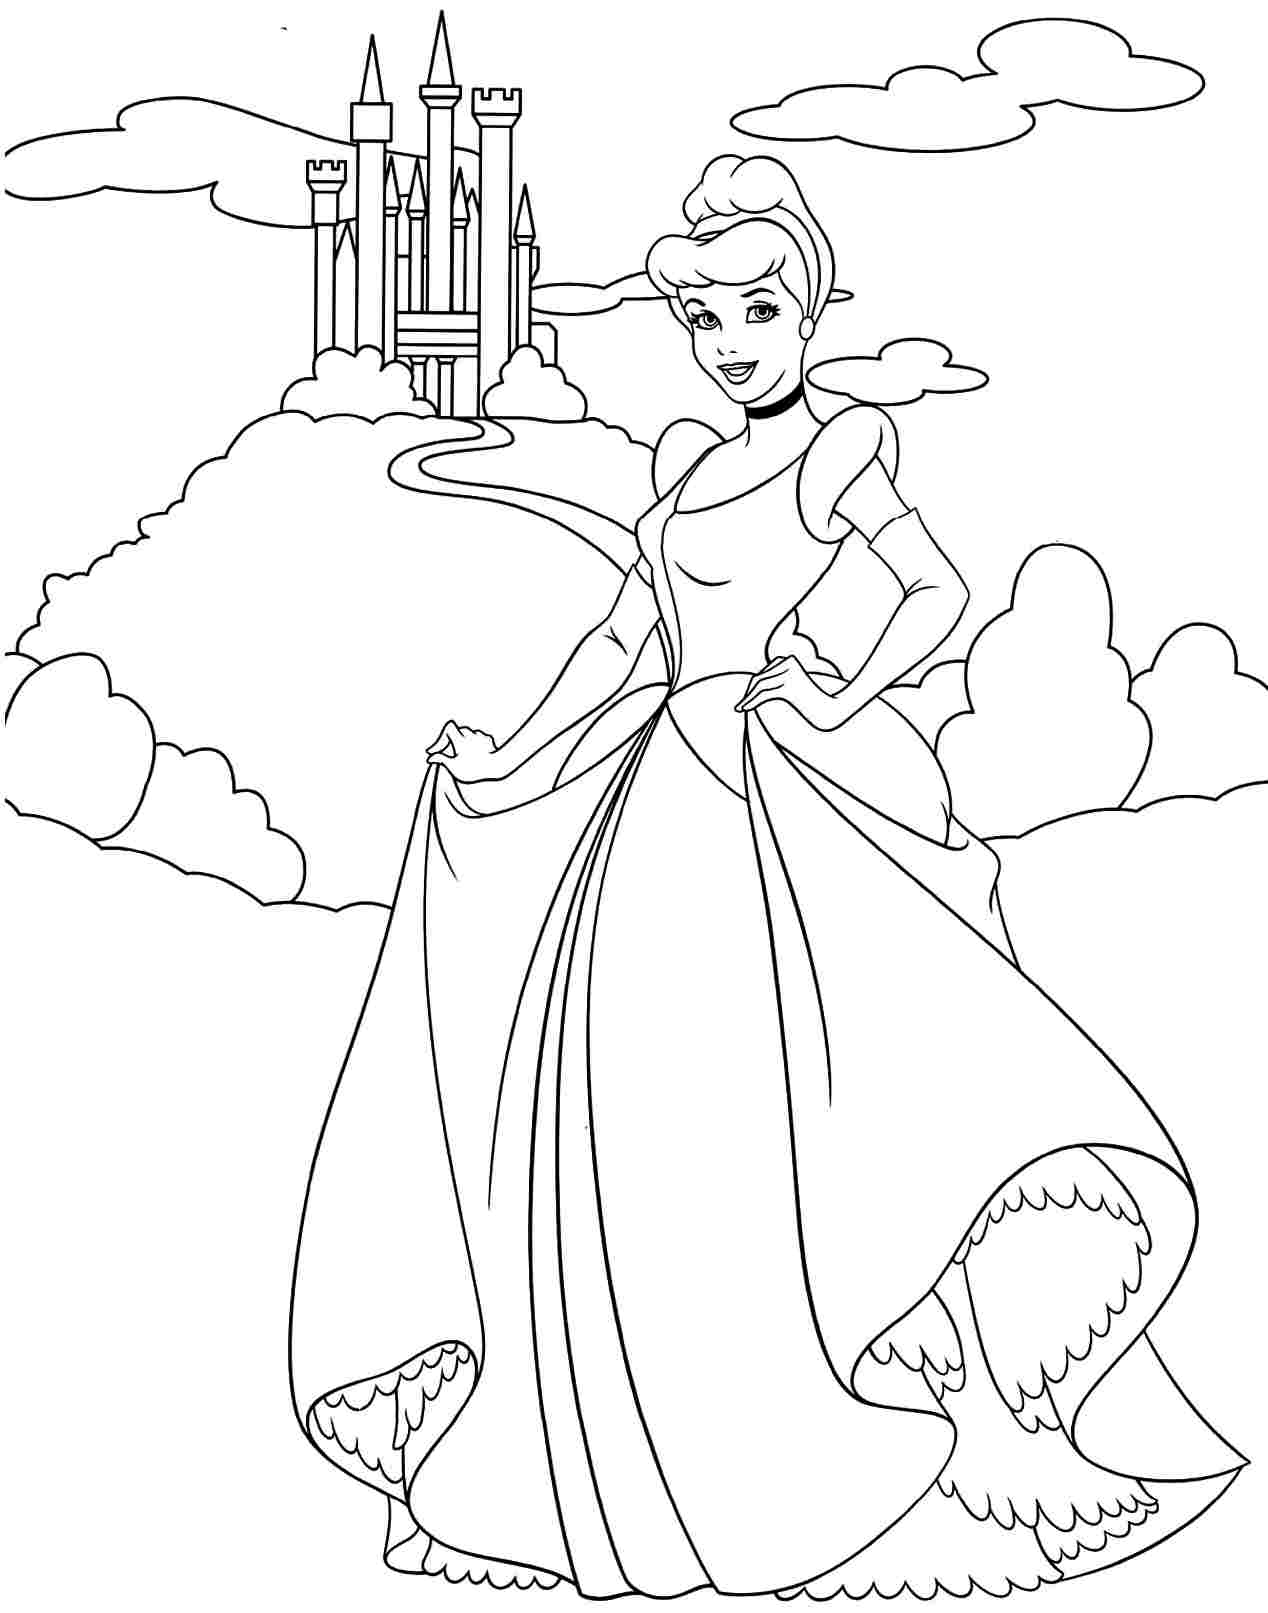 Free Disney Princess Coloring Pages Cinderella - SheetalColor.com